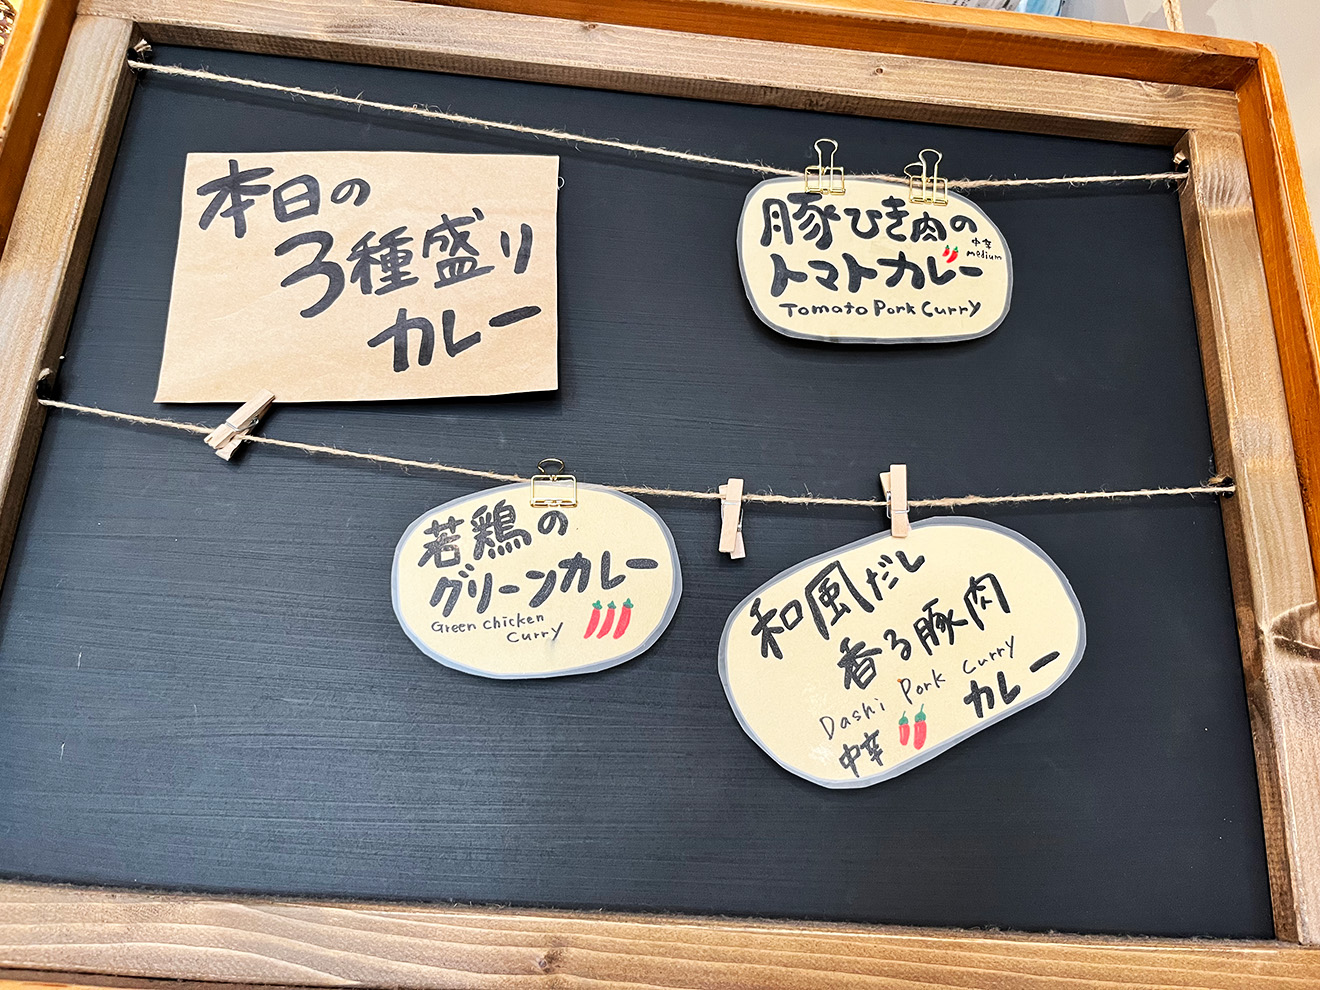 「狛犬珈琲」の本日の3種盛りカレーメニュー